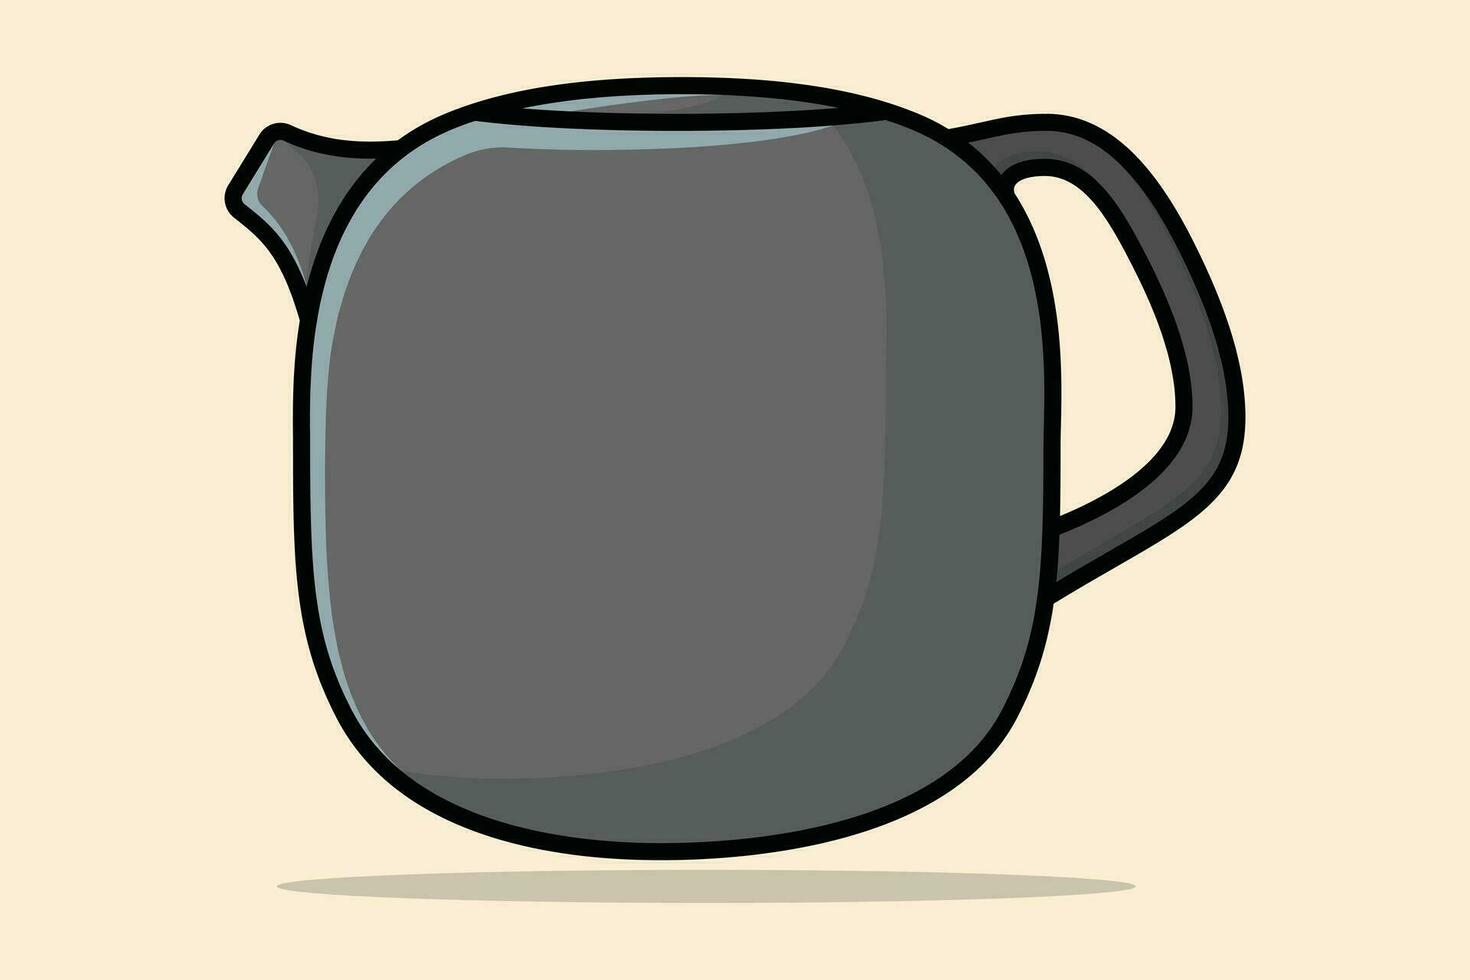 schön grau Tee Kessel Vektor Illustration. Küche Innere Objekt Symbol Konzept. Morgen Tee Teekanne mit geschlossen Deckel Symbol Design auf Licht Orange Hintergrund.